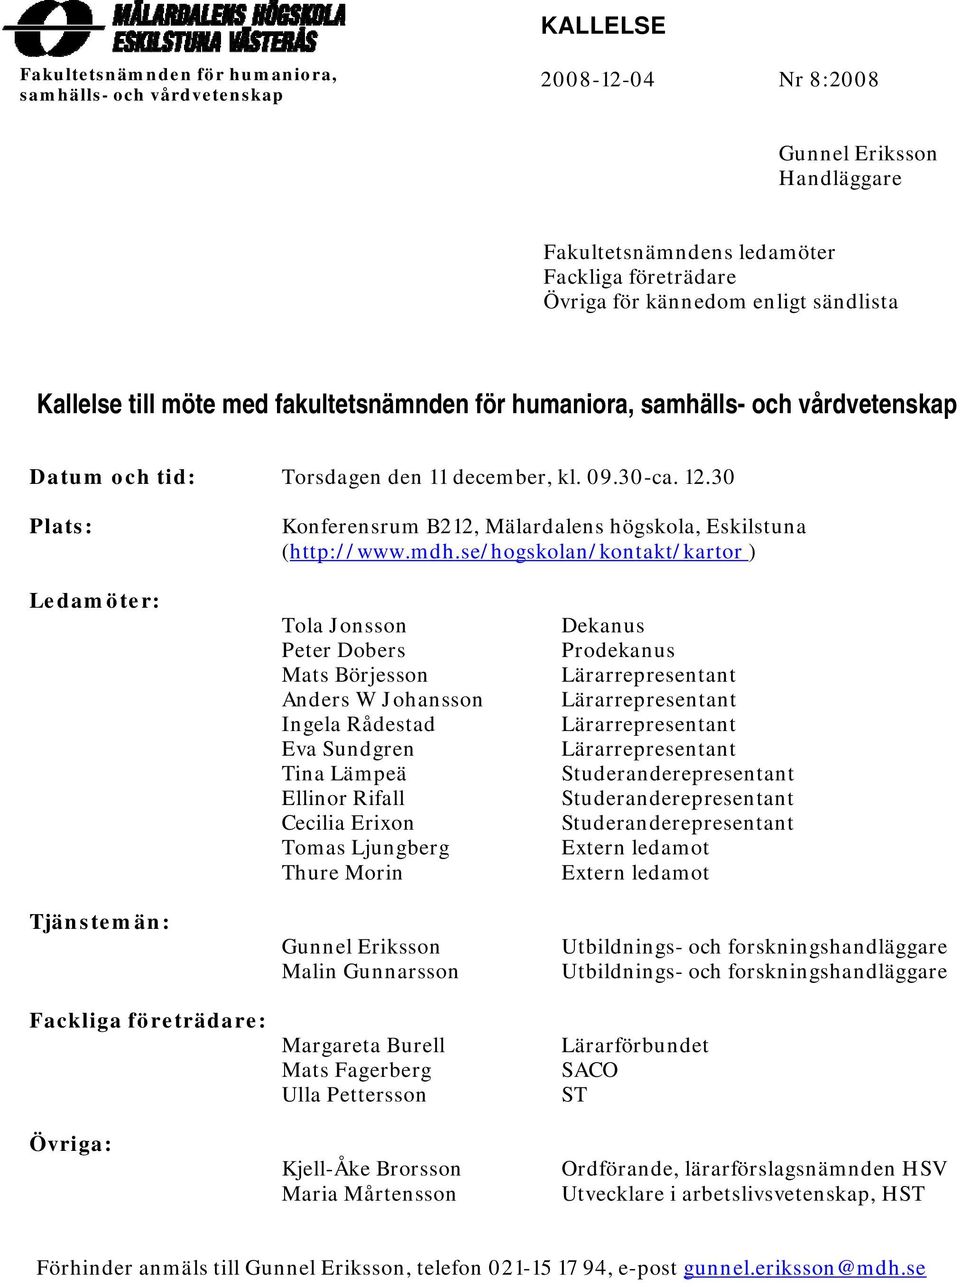 30 Plats: Konferensrum B212, Mälardalens högskola, Eskilstuna (http://www.mdh.